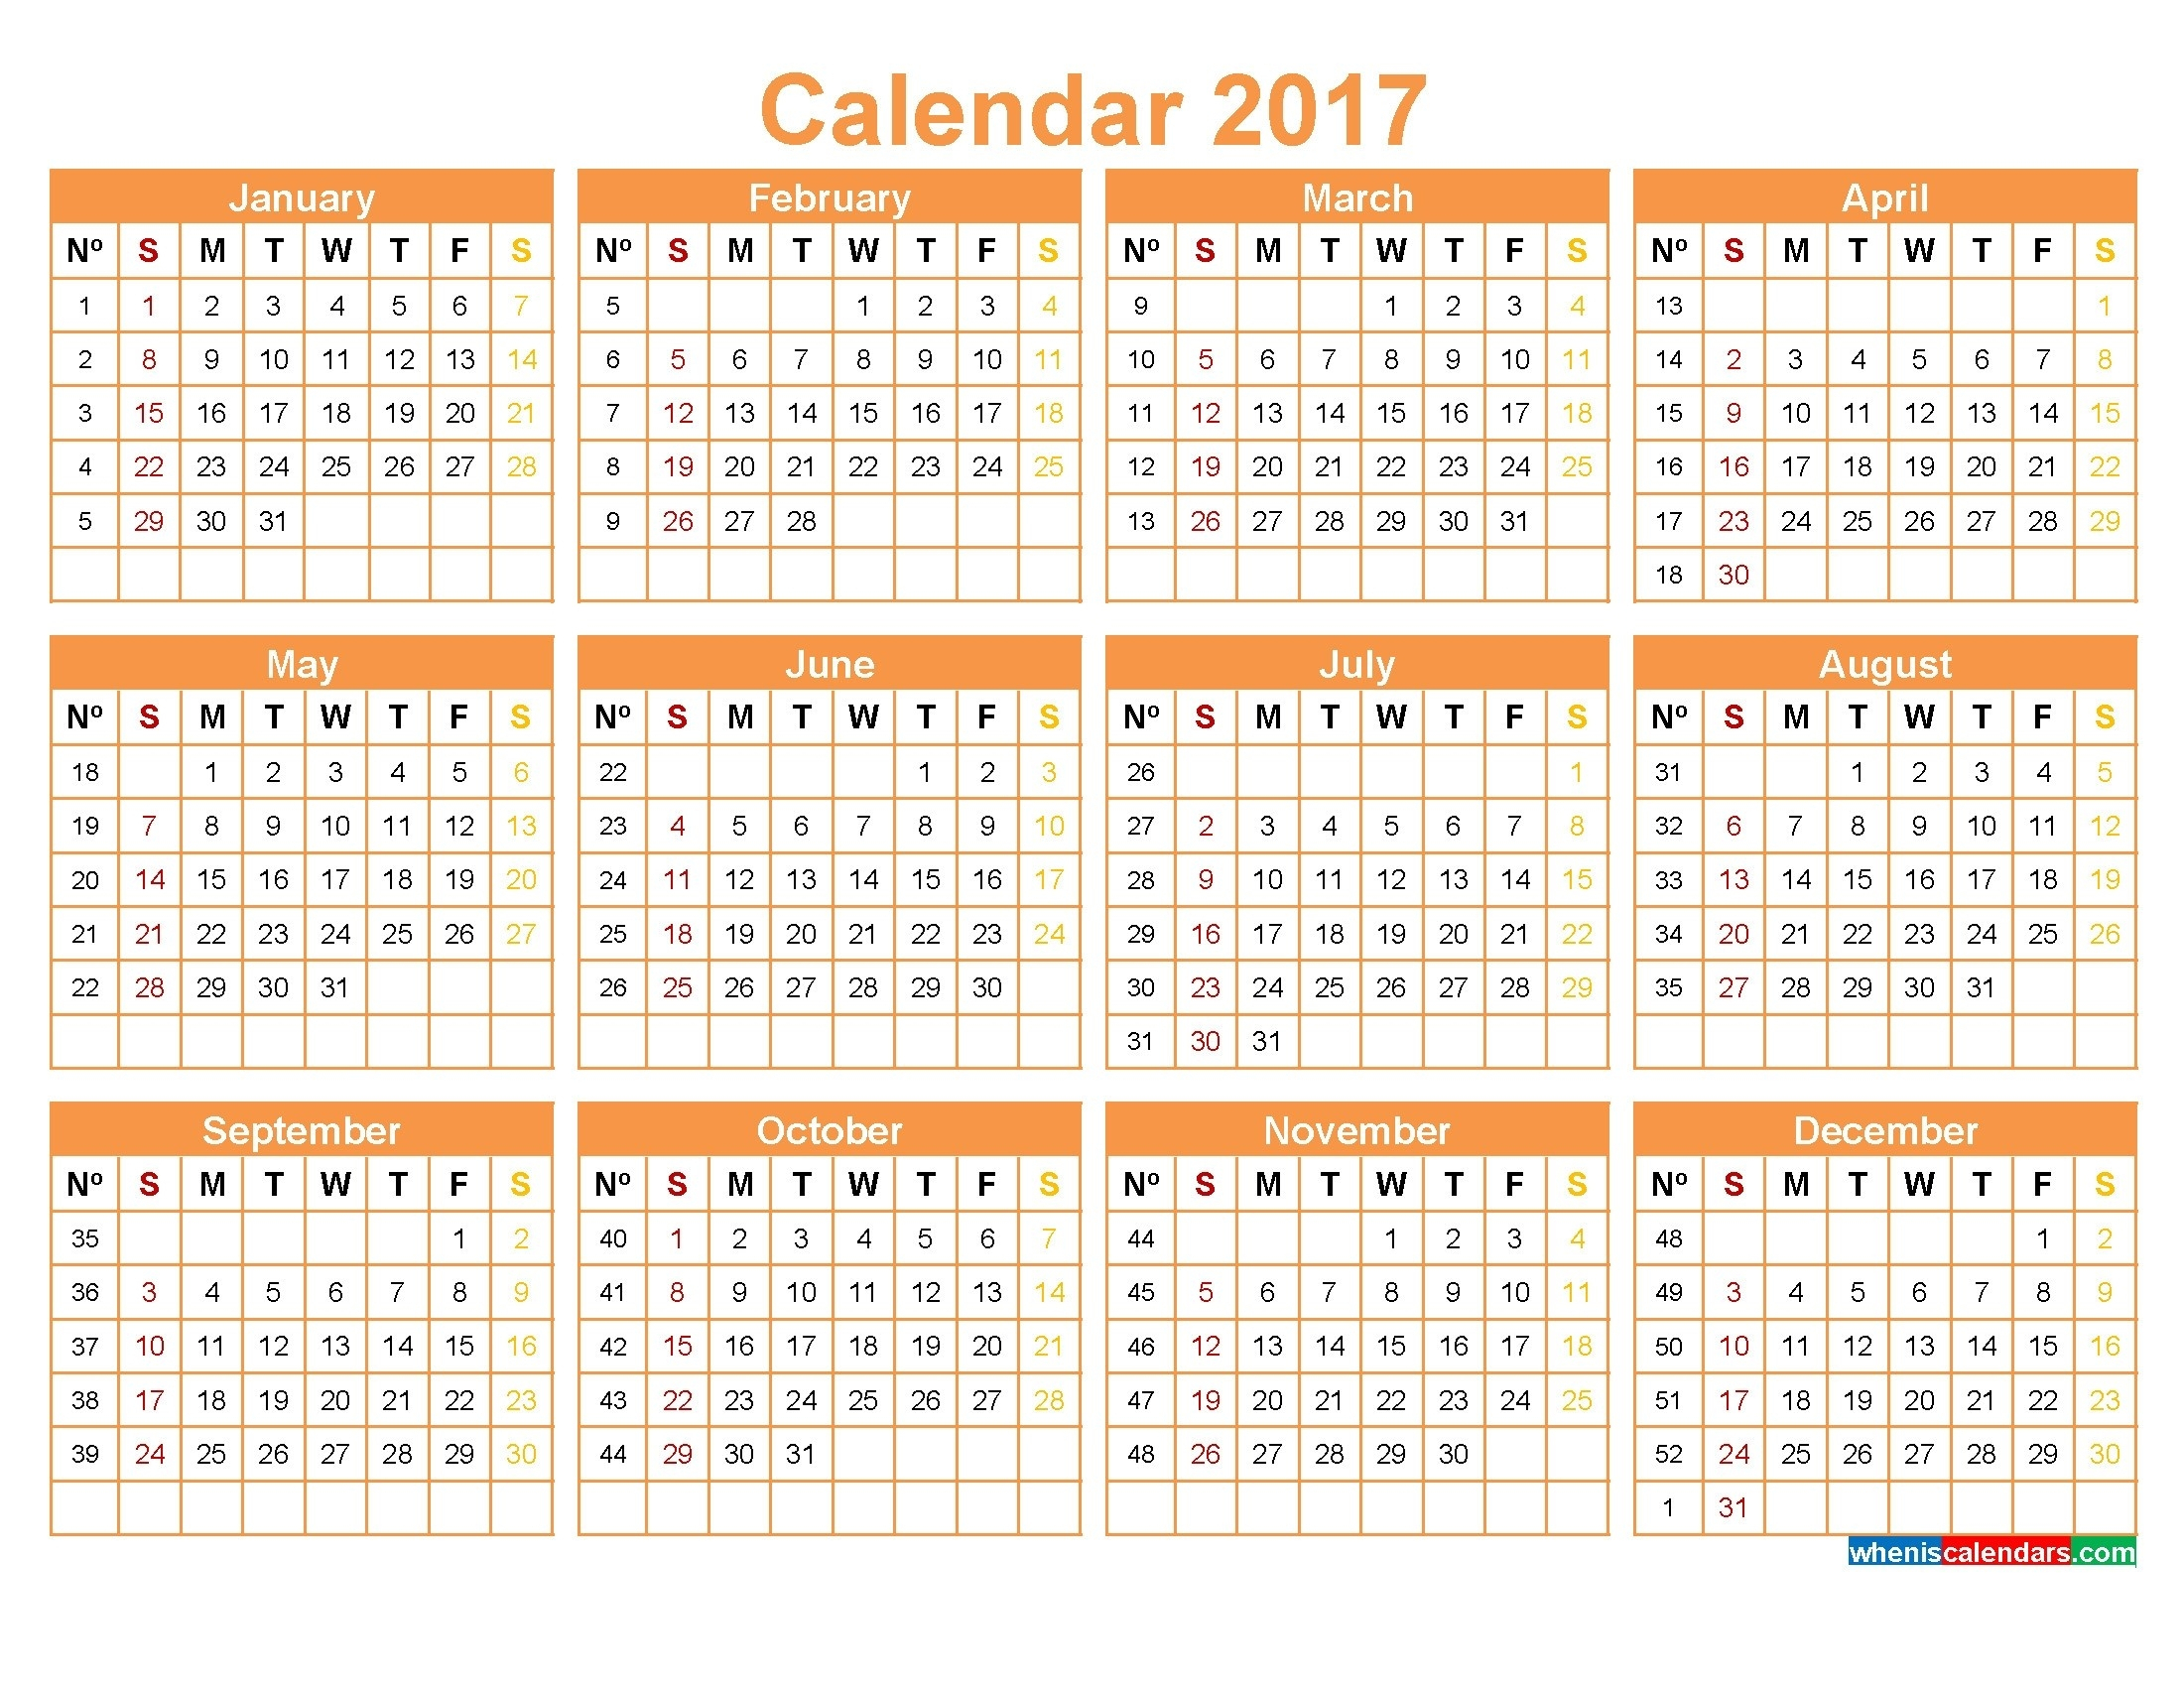 Calendario Juliano 2020 Quadax | Calendar For Planning